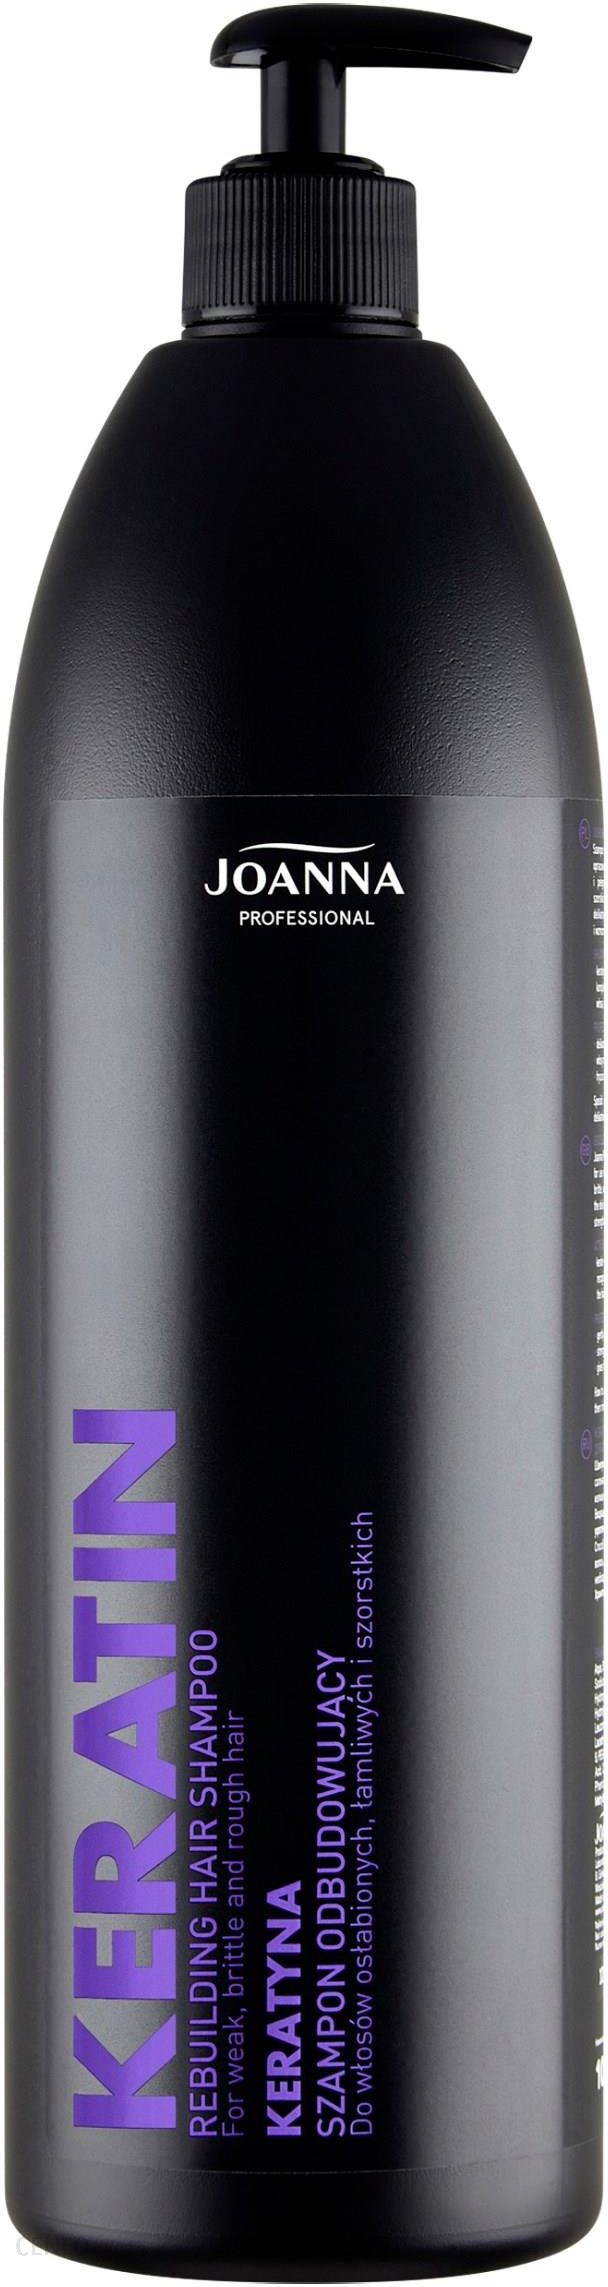 szampon joanna keratynowy profesional skład